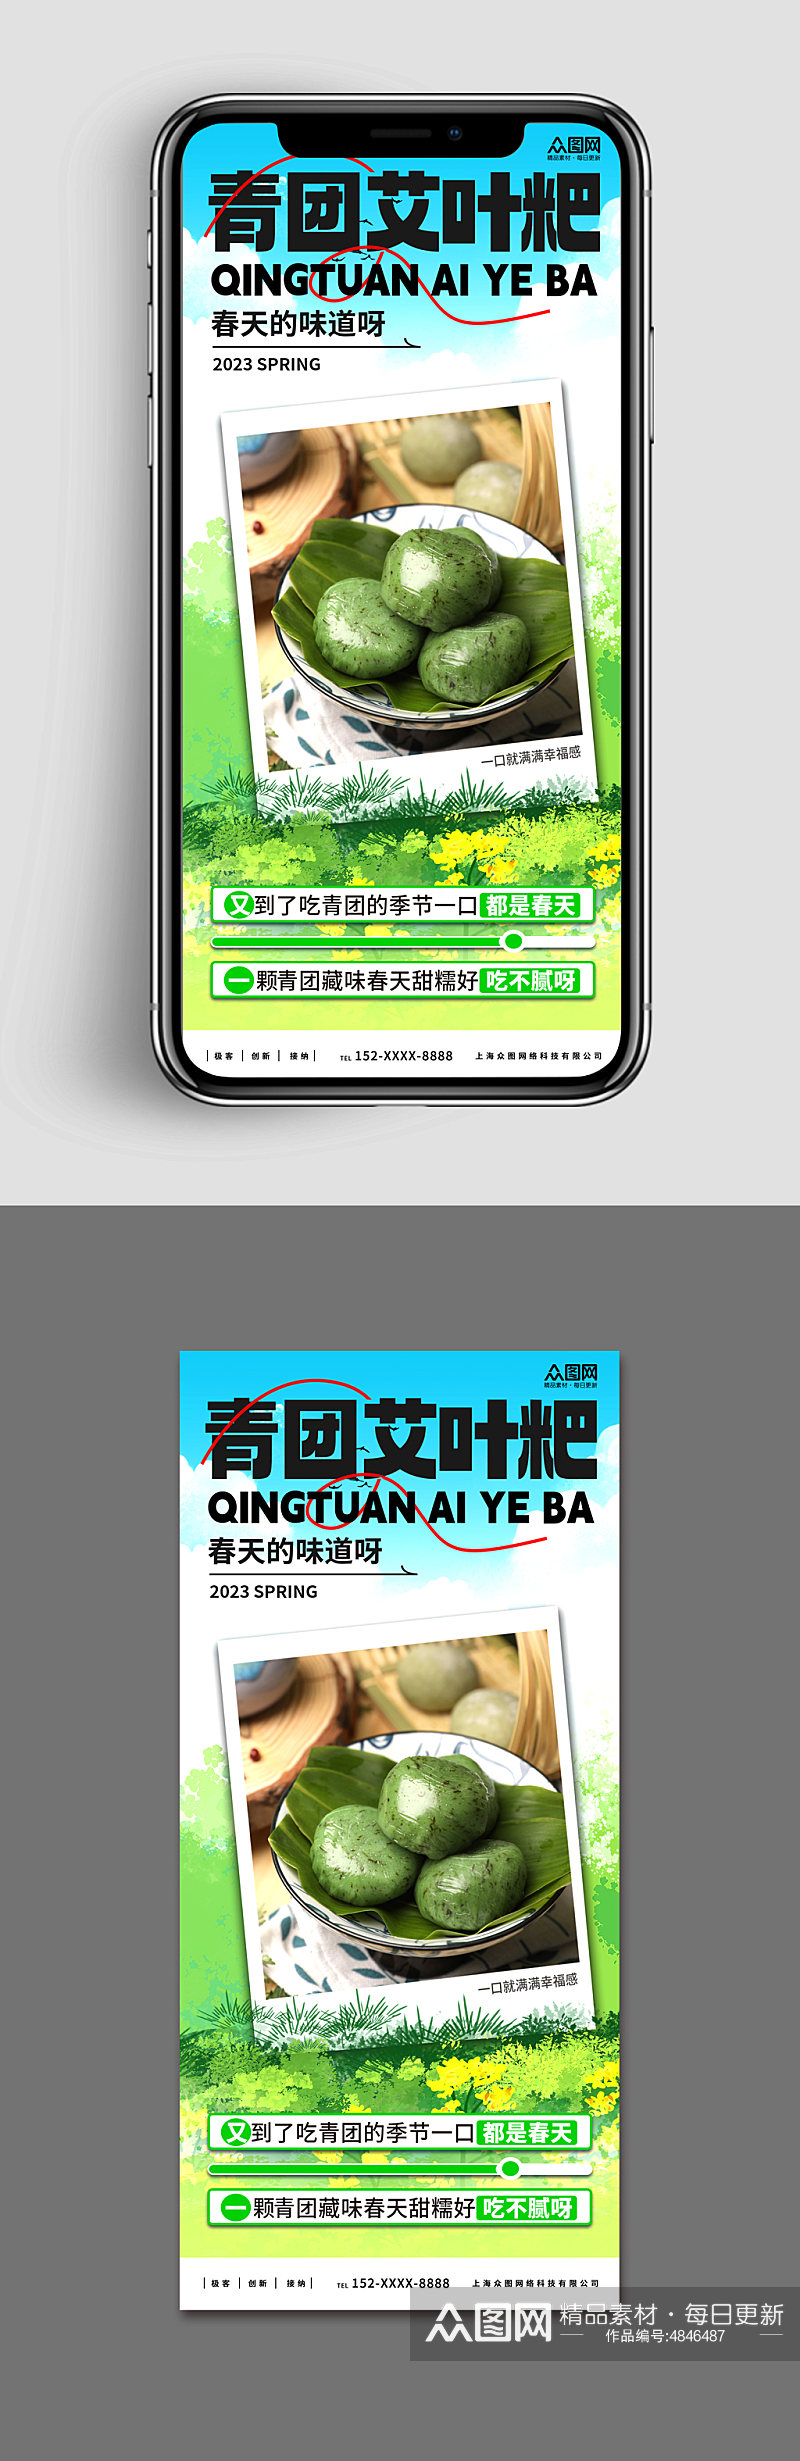 新媒体手机海报青团艾叶粑美食宣传海报素材